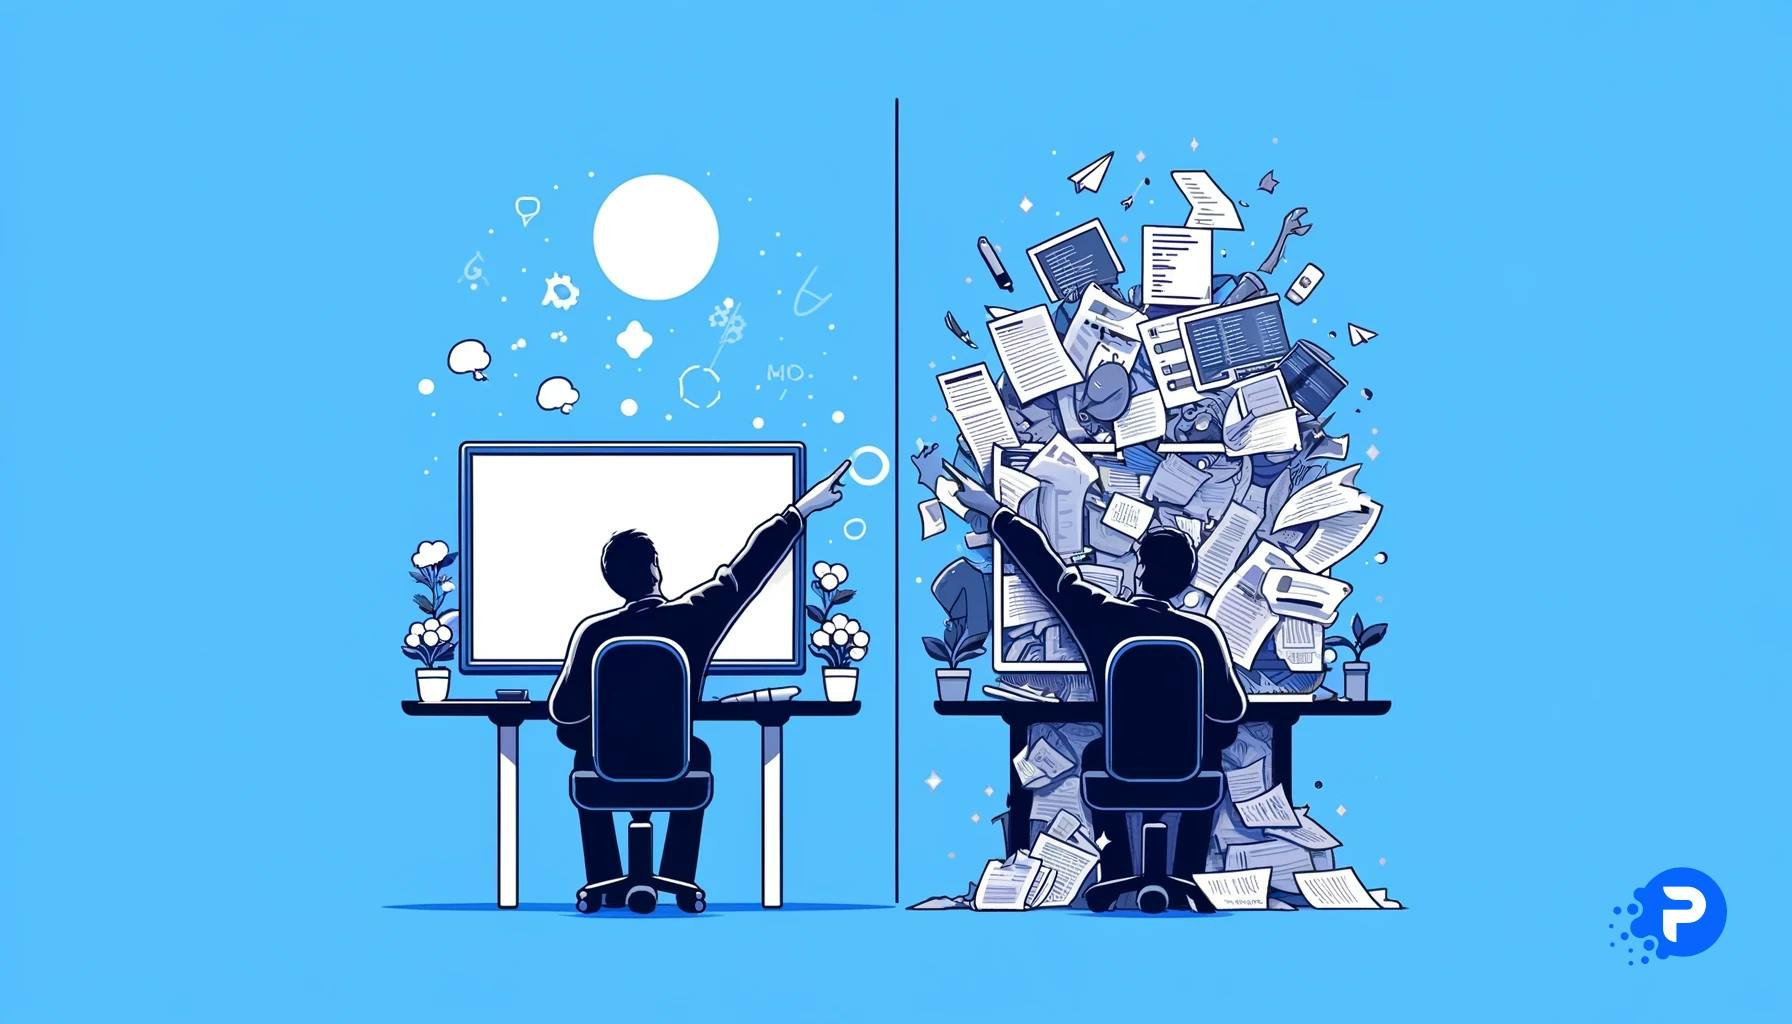 Ilustração minimalista dividida: à esquerda, um usuário aponta para um monitor, indicando uma mudança de design simples e intuitiva. À direita, o monitor exibe uma complexidade de código, análises e dados, representando a complexidade das alterações de código no desenvolvimento web.